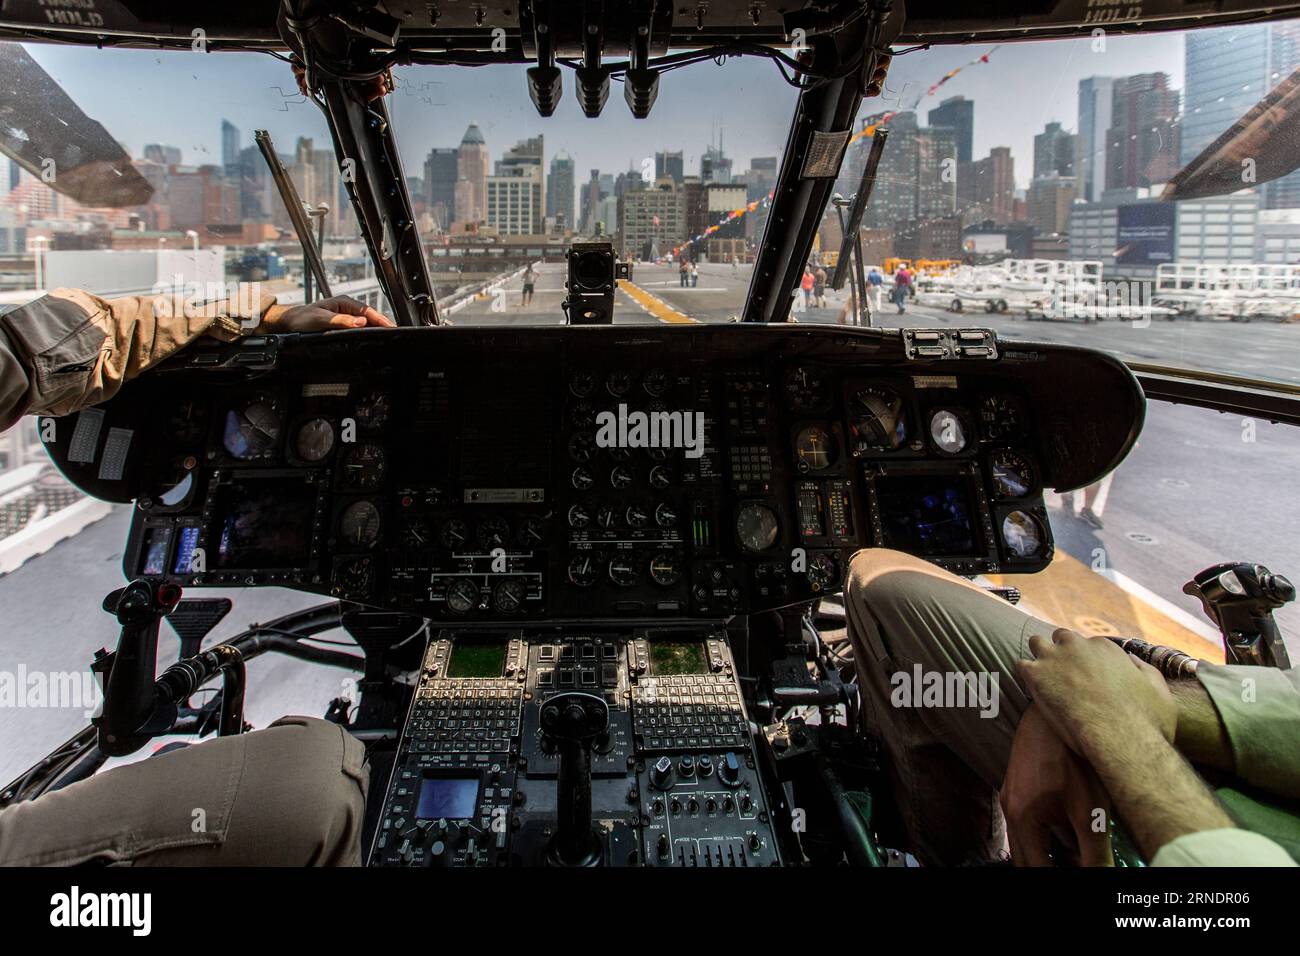 La foto scattata il 27 maggio 2016 mostra la cabina di pilotaggio di un elicottero Sikorsky CH-53E Super Stallion a bordo della nave d'assalto anfibio USS Bataan (LHD-5), classe Wasp, durante la 28a settimana annuale della flotta di New York a New York, negli Stati Uniti. La New York Fleet Week si svolge dal 25 maggio al 30 maggio, dove centinaia di militari delle forze armate visitano New York City come parte delle commemorazioni del Memorial Day . US-NEW YORK-FLEET WEEK-USS BATAAN LixMuzi PUBLICATIONxNOTxINxCHN la foto scattata IL 27 2016 maggio mostra la cabina di pilotaggio di un elicottero SIKORSKY CH 53E Super Stallion A bordo della USS Bataan L. Foto Stock